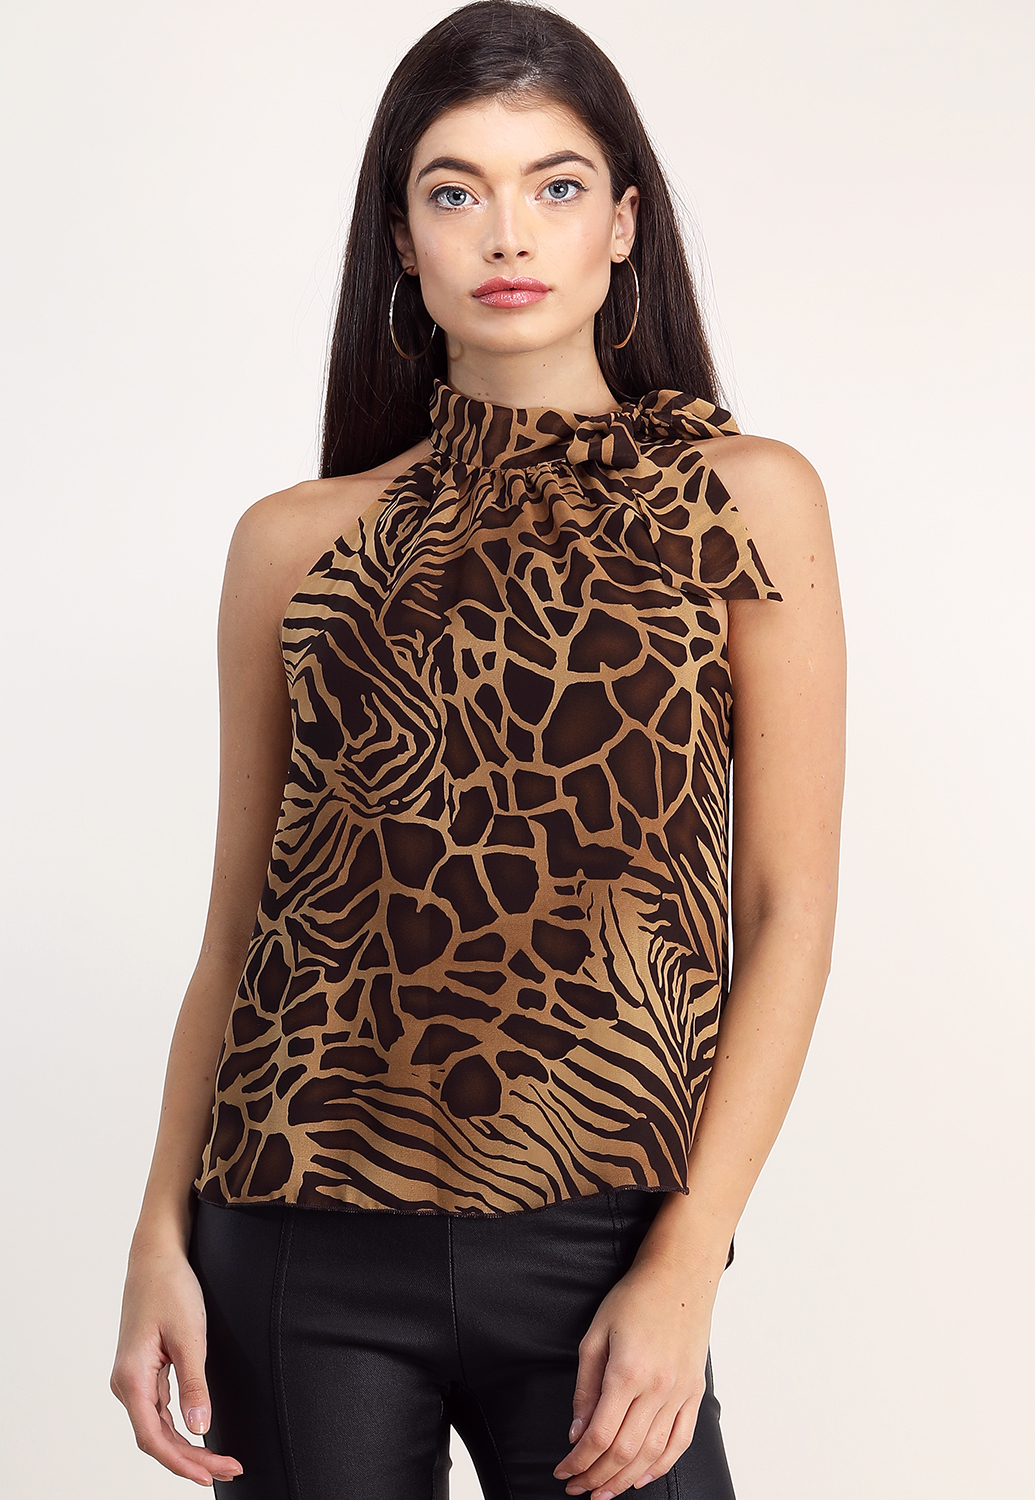 Giraffe Print Dressy Top 